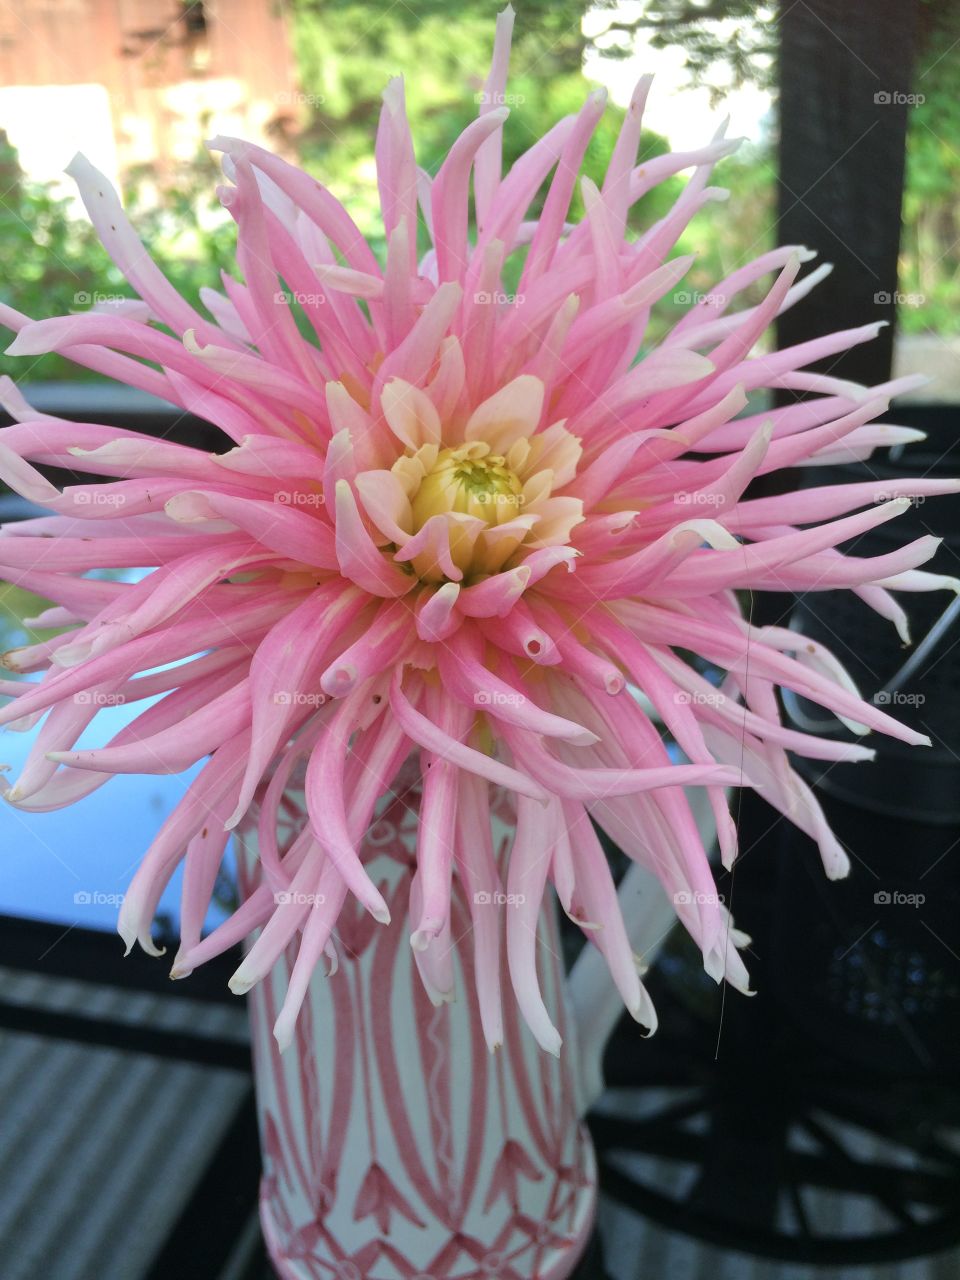 Blooming pink flowers in vase